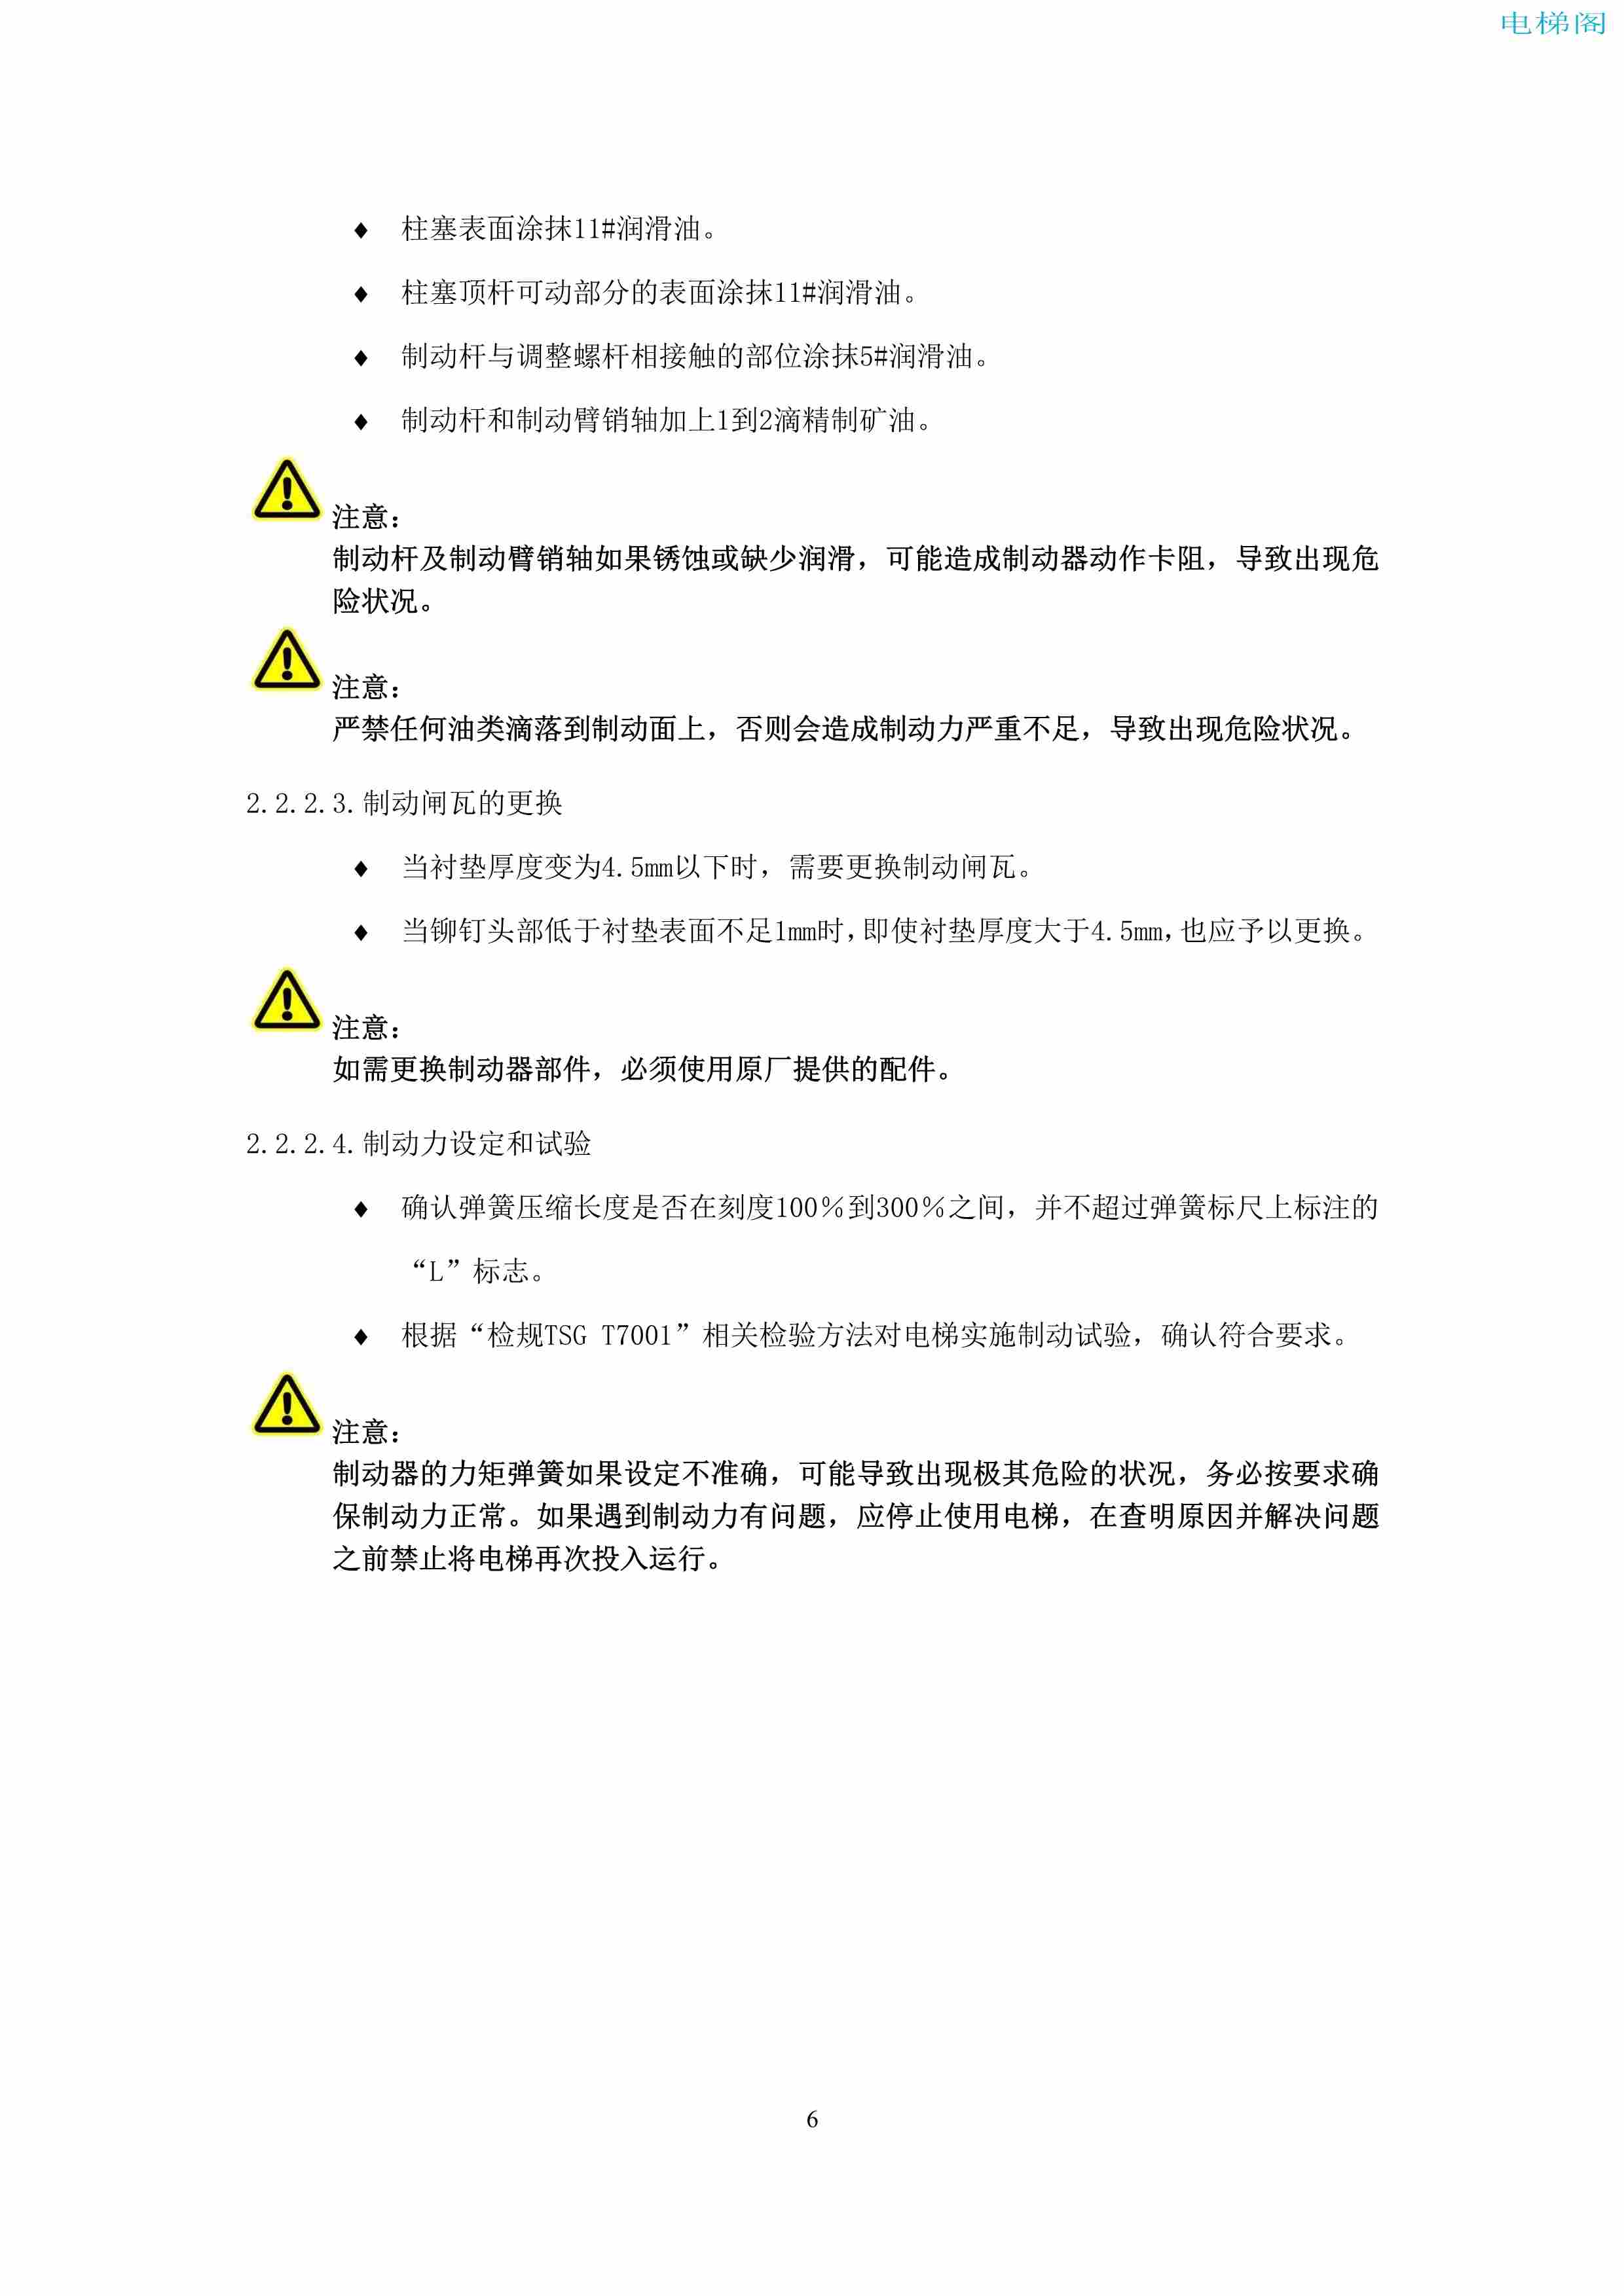 上海三菱电梯有限公司电梯制动器维护作业要领汇编_8.jpg